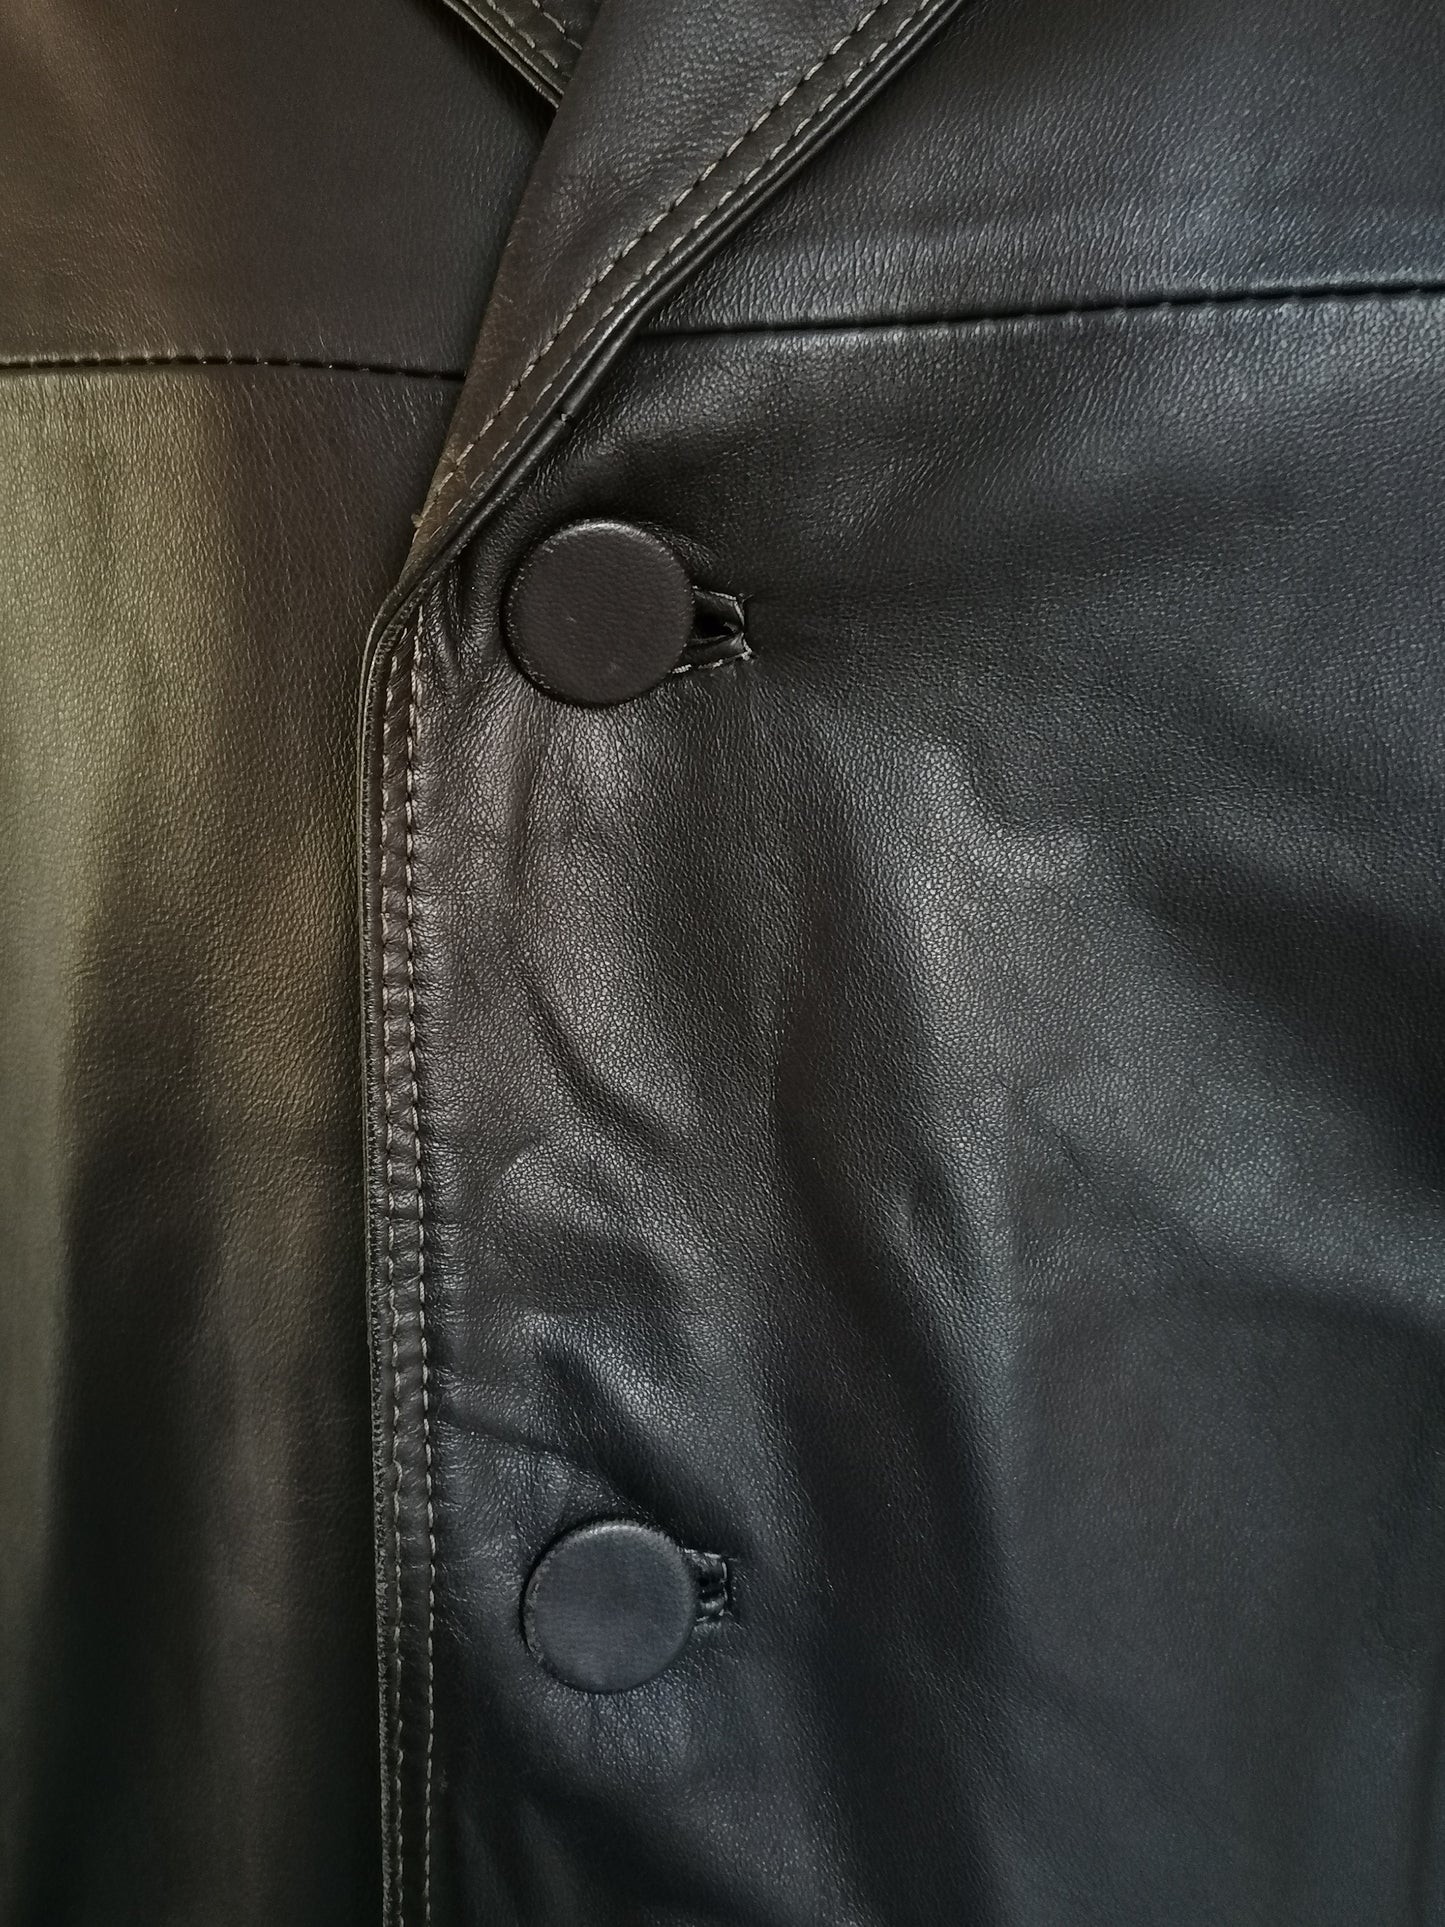 B Scelta: giacca di pelle LEderMode L&B. Colorato marrone scuro. Dimensioni 54 / L. Spot sulla manica.